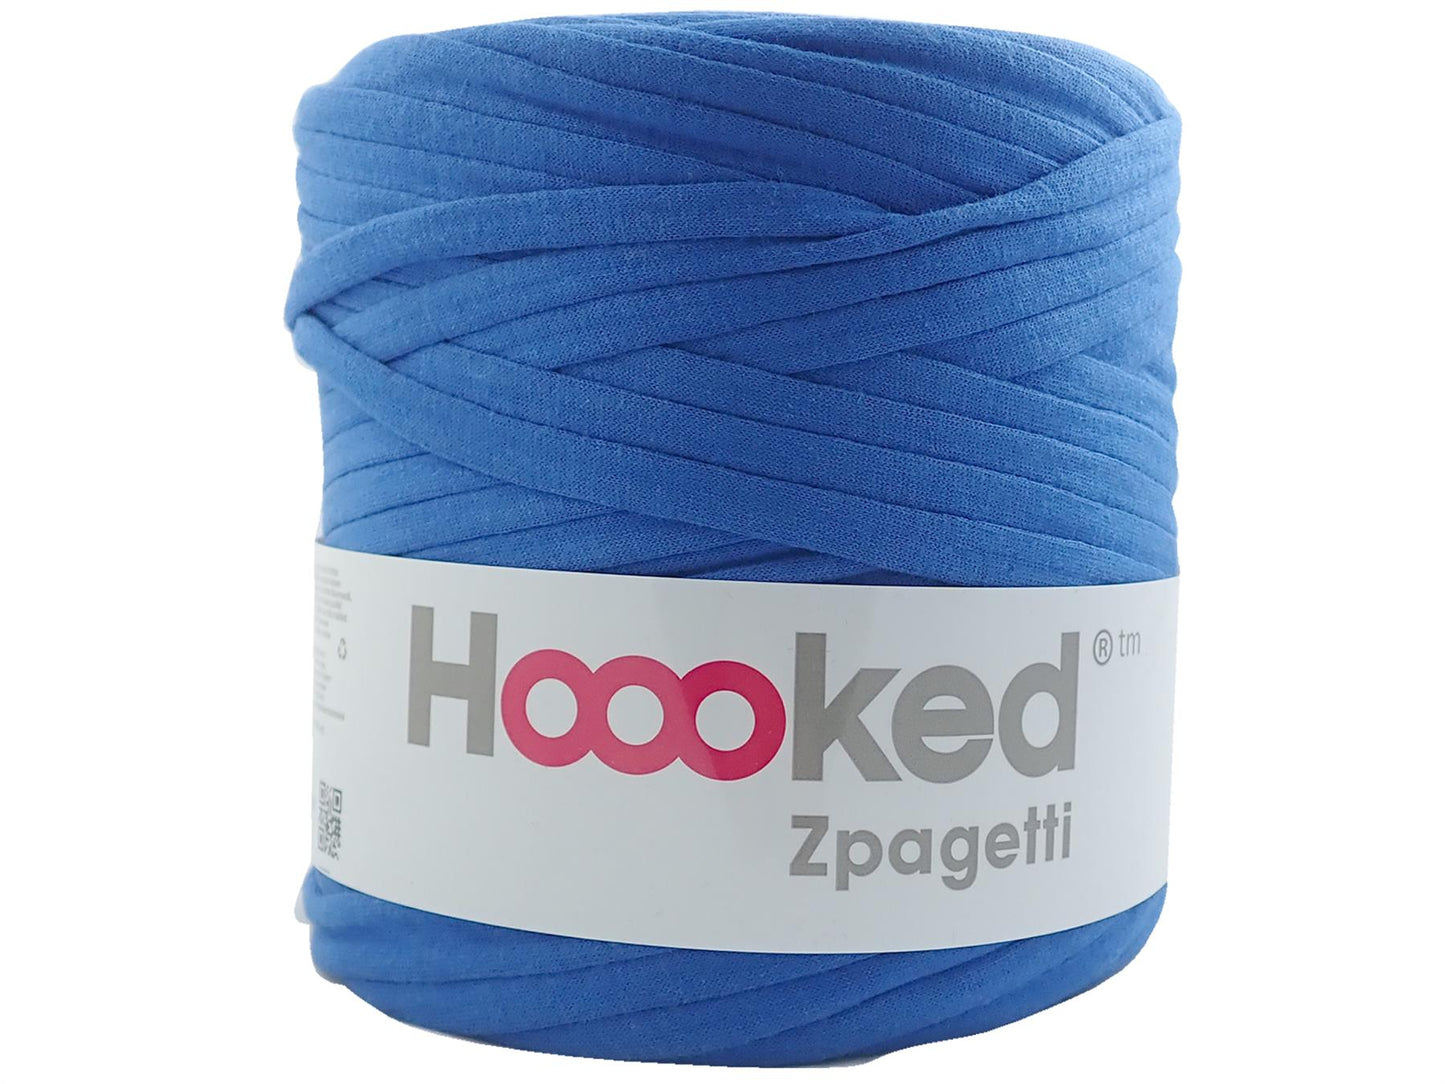 Hoooked Zpagetti Blue Cotton T-Shirt Yarn - 120M 700g